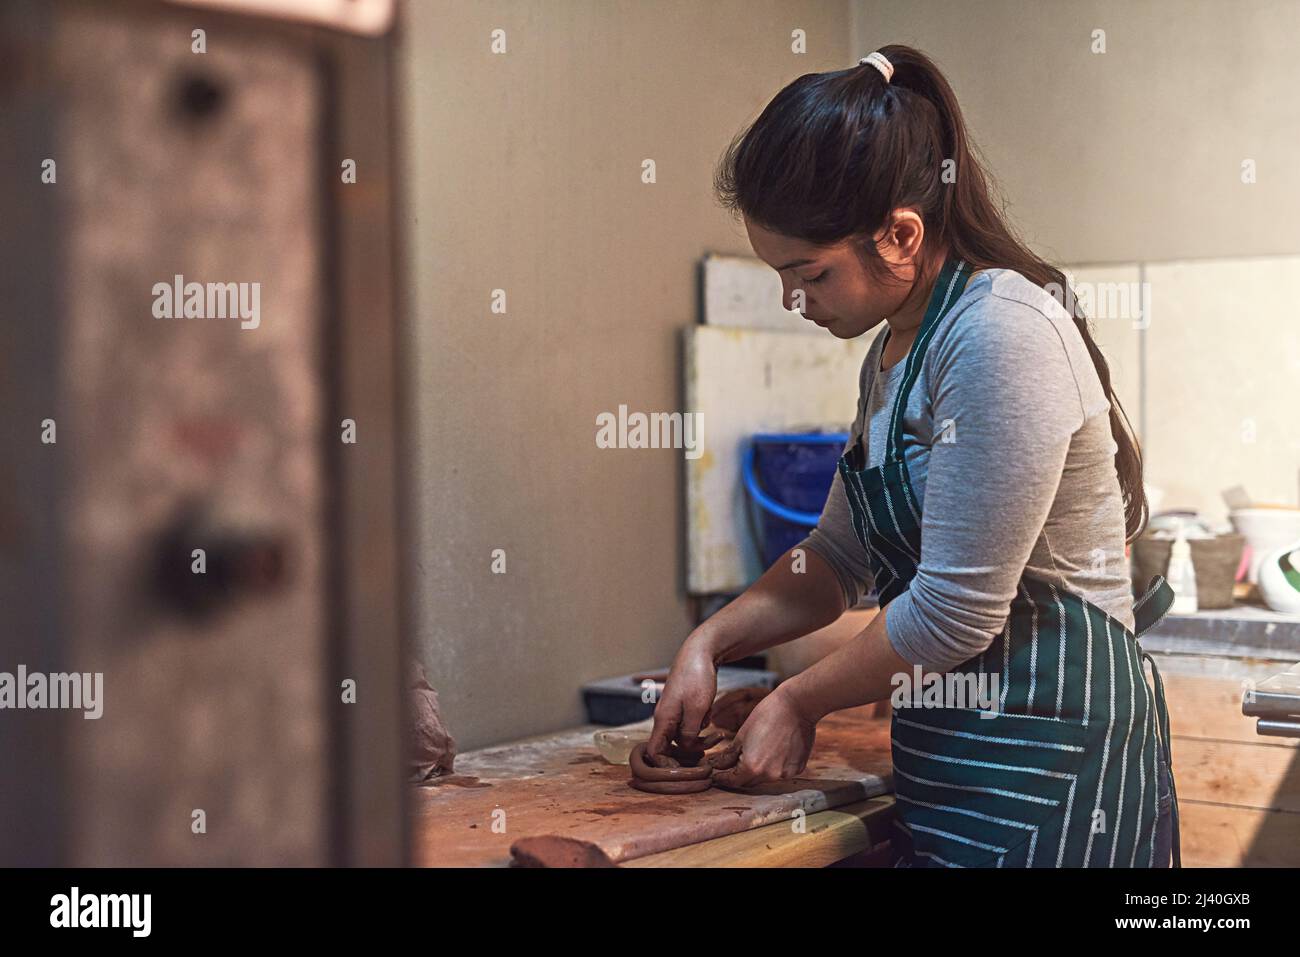 Mit Präzision und Sorgfalt basteln. Aufnahme einer Keramikkünstlerin, die in einer Werkstatt an ihrer Töpferei arbeitet. Stockfoto